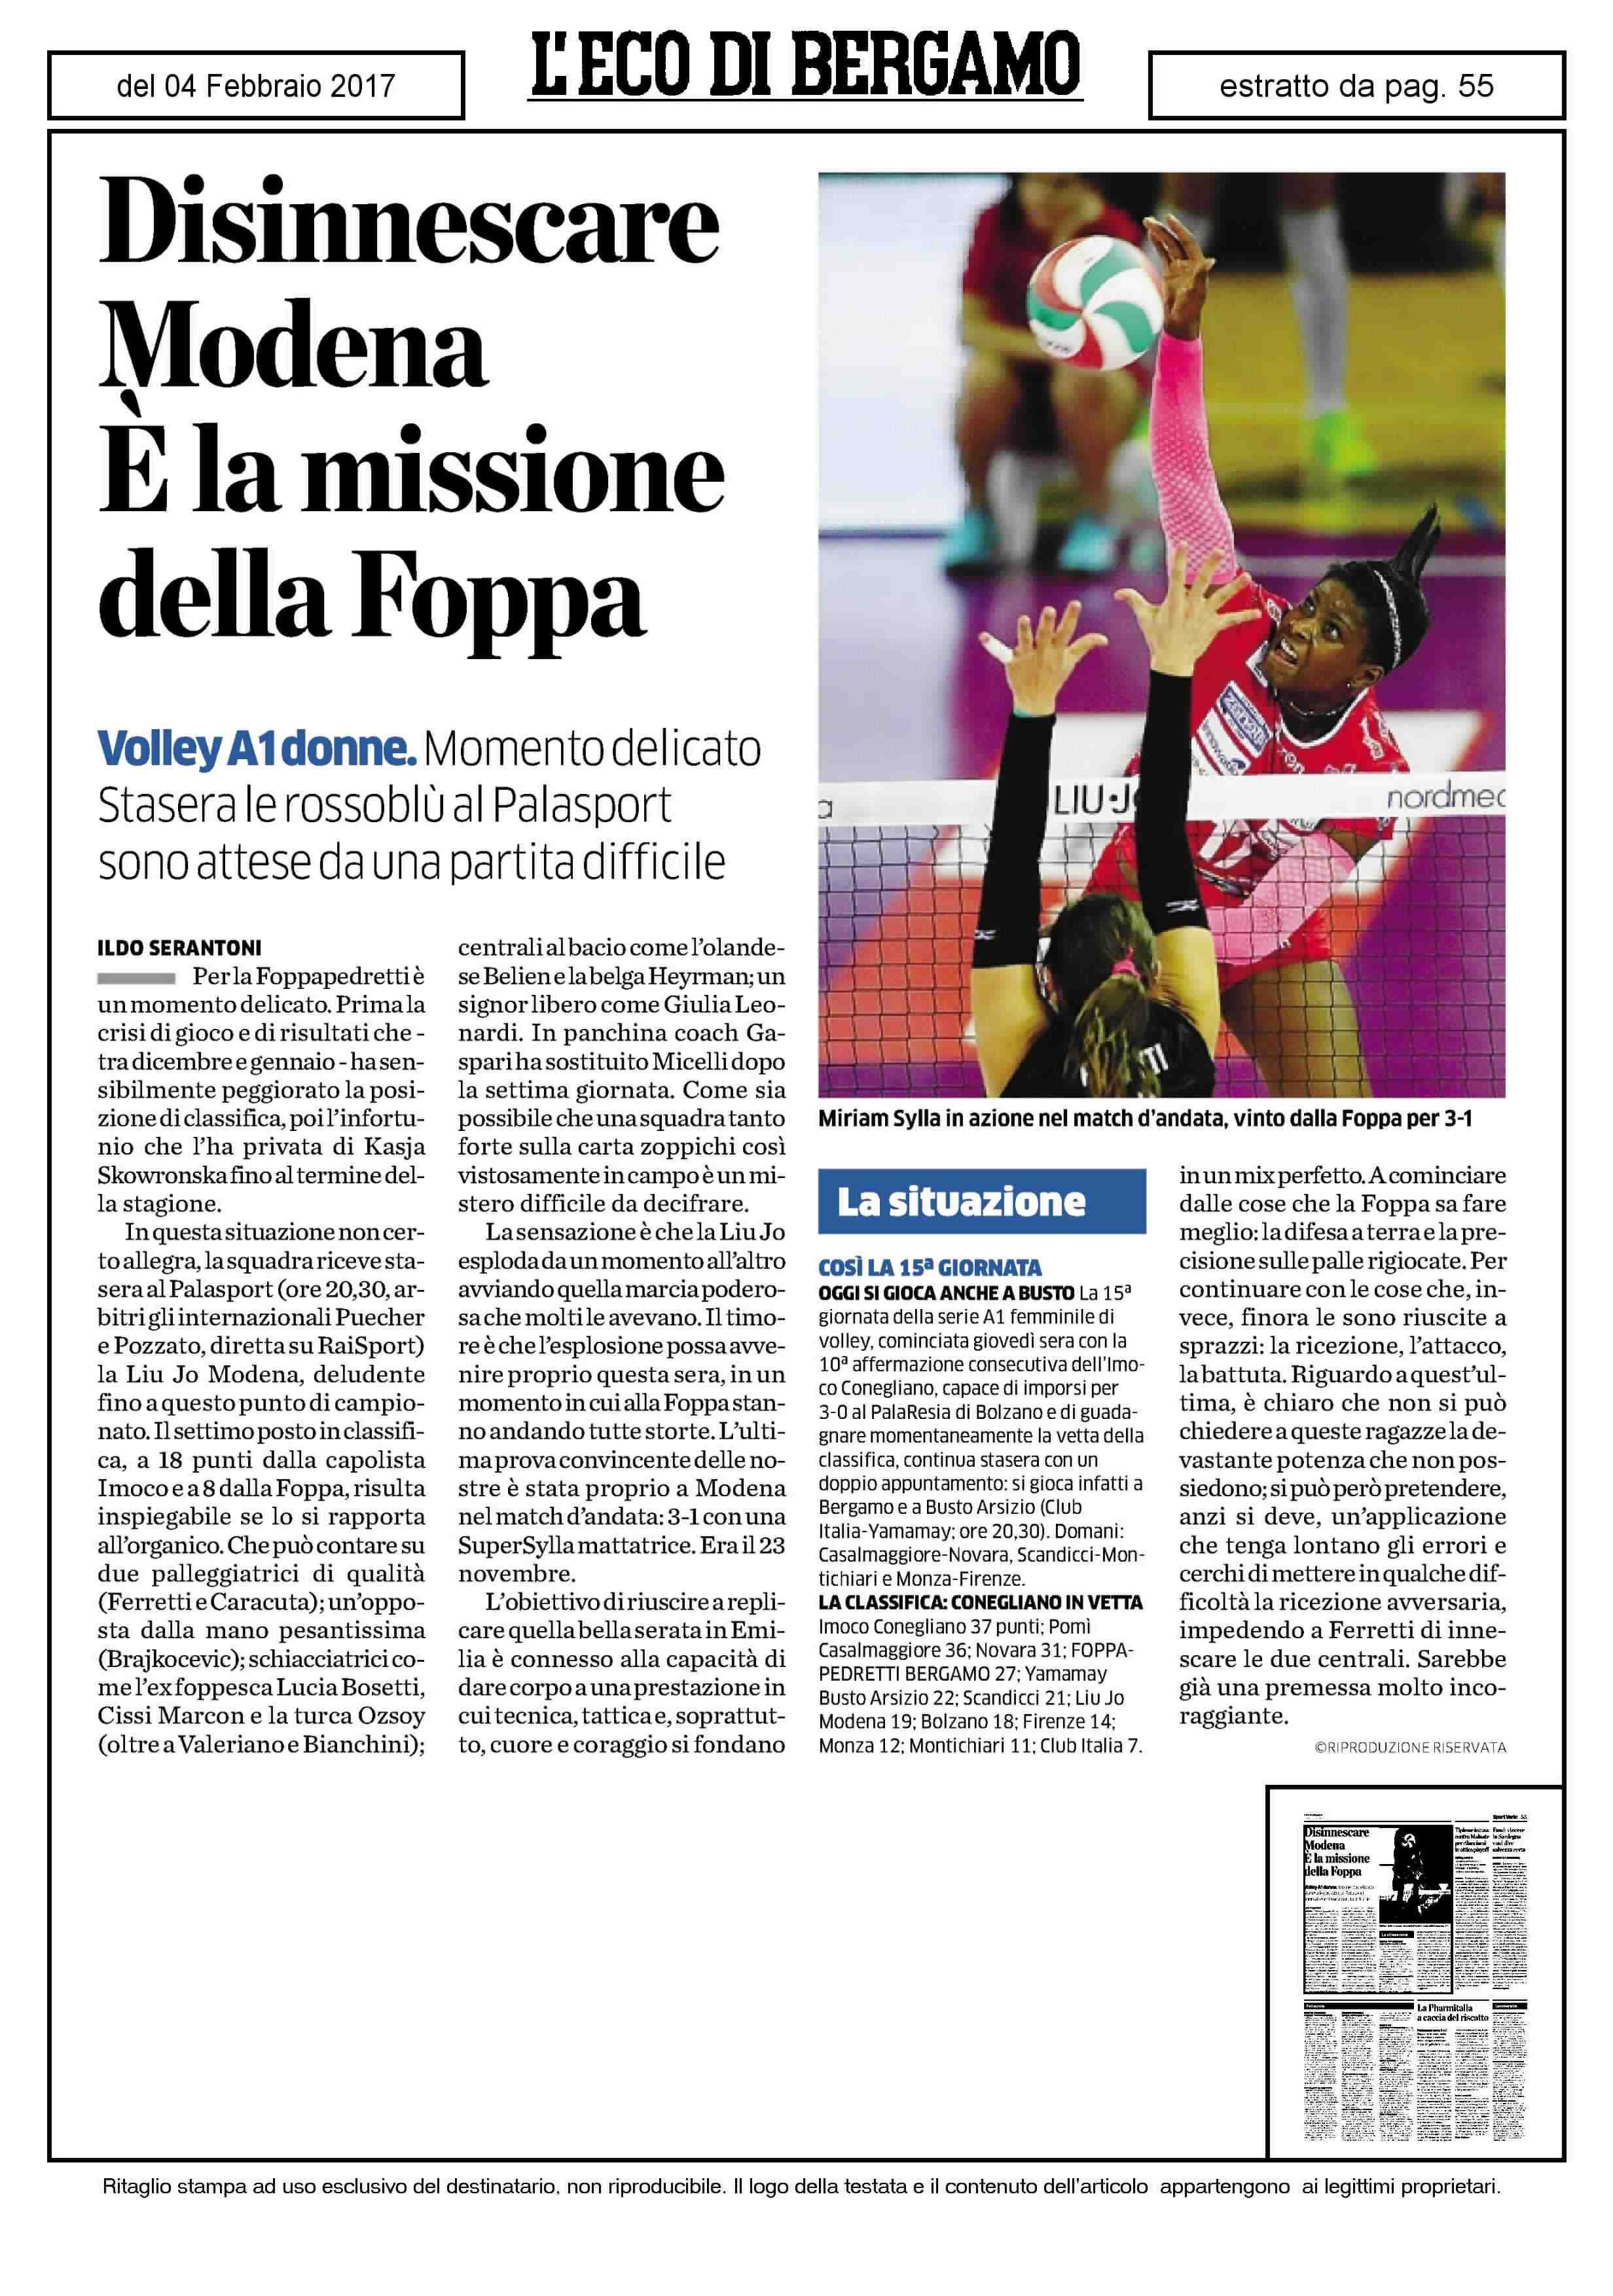 Disinnescare Modena E la missione della Foppa Volley A1donne.